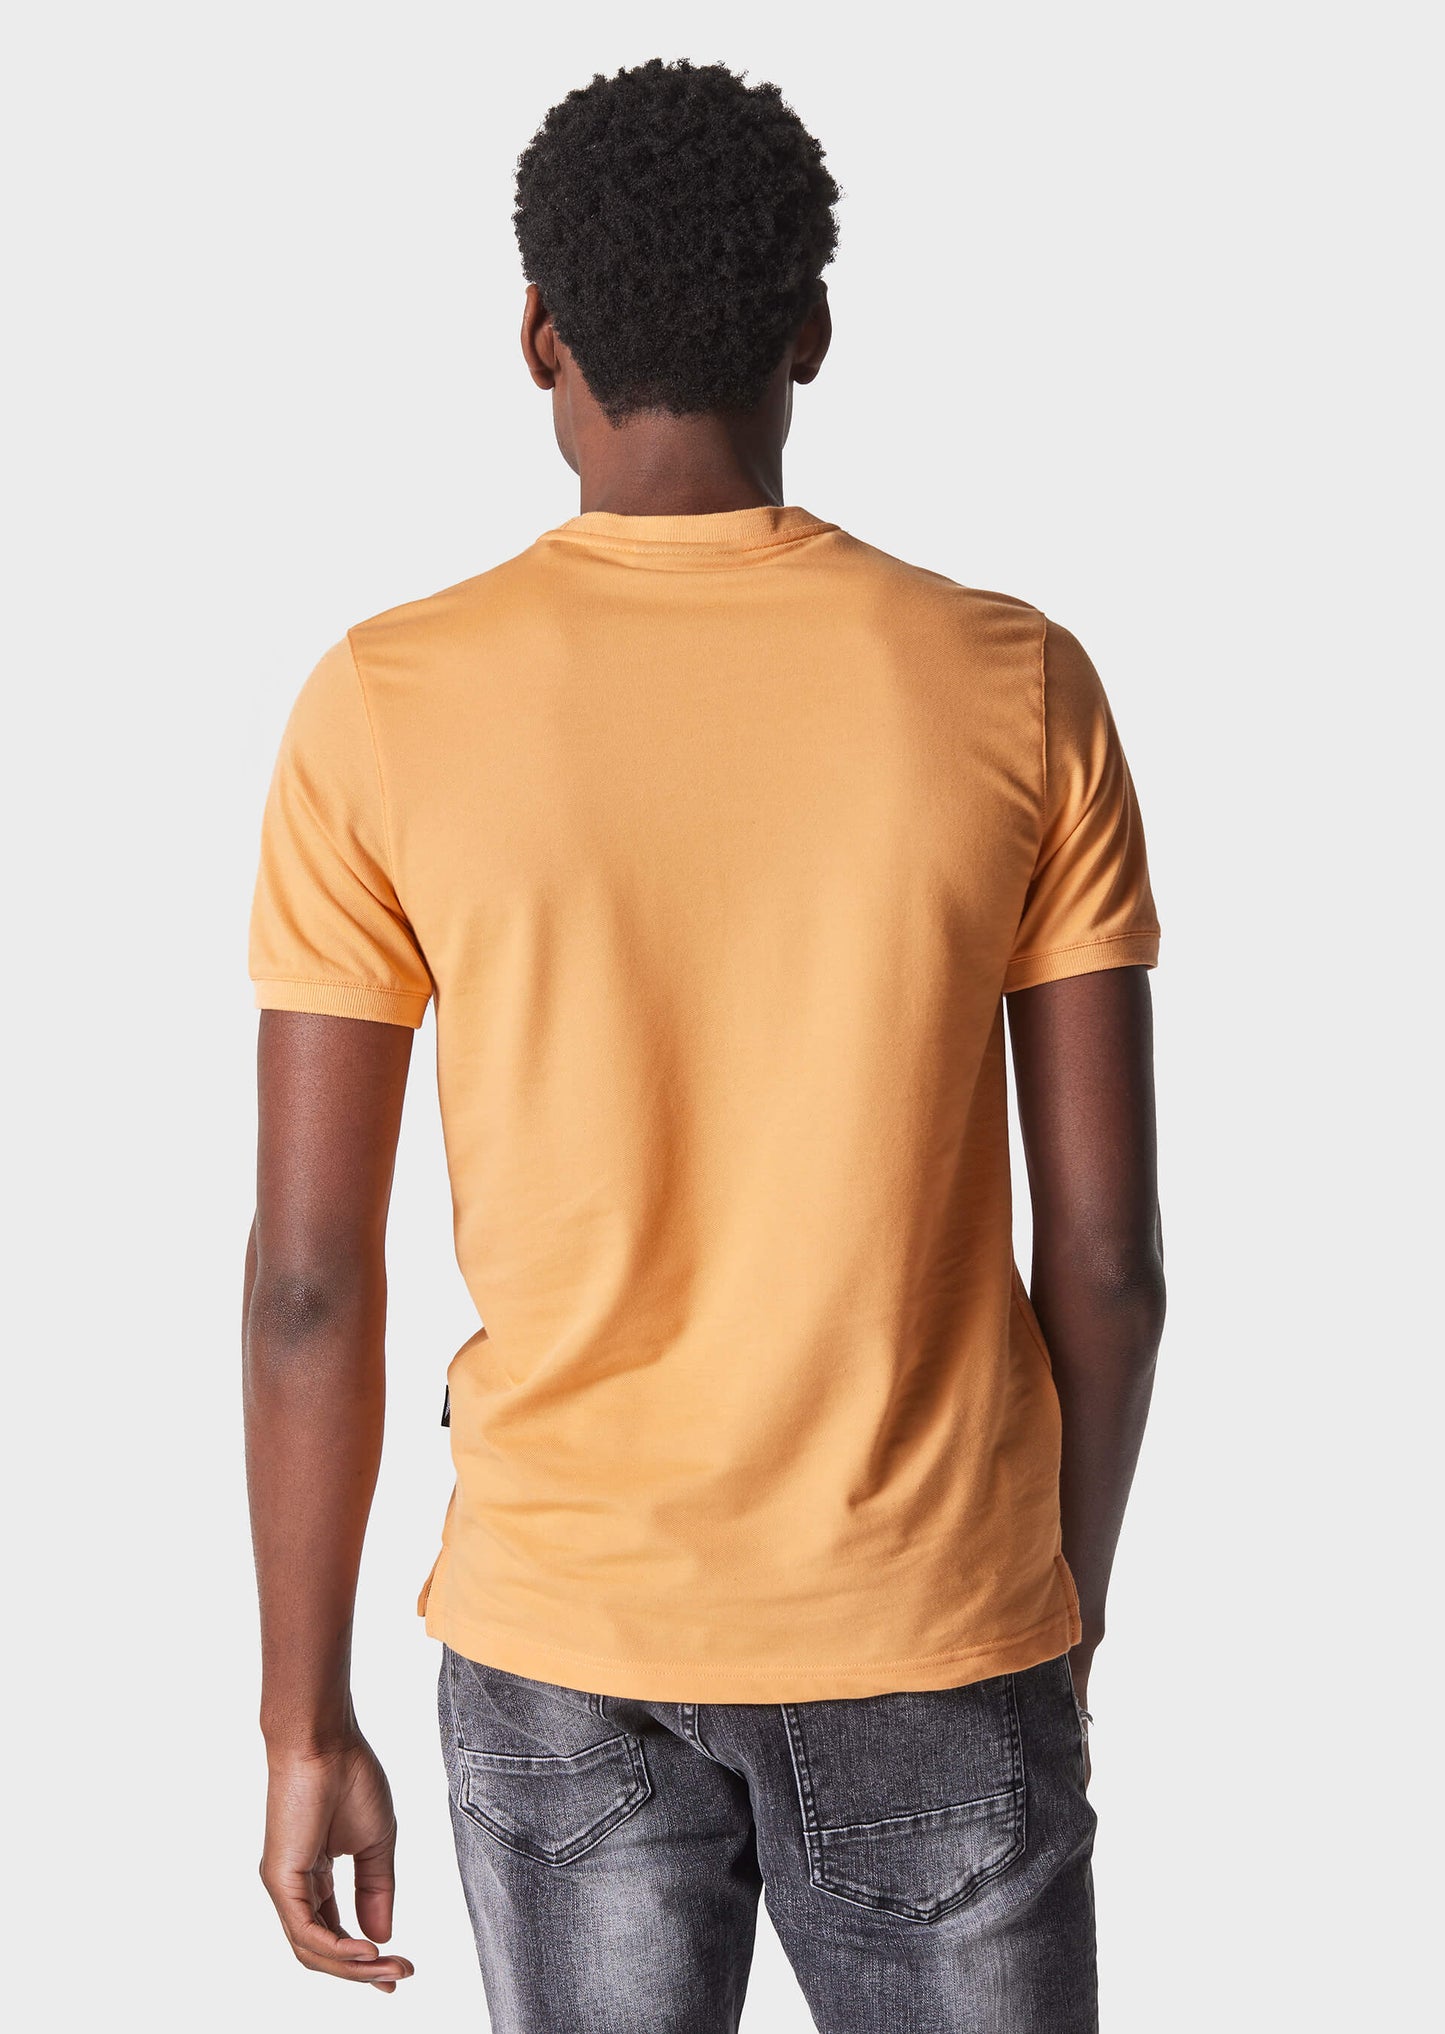 Perks Russet Orange T-Shirt